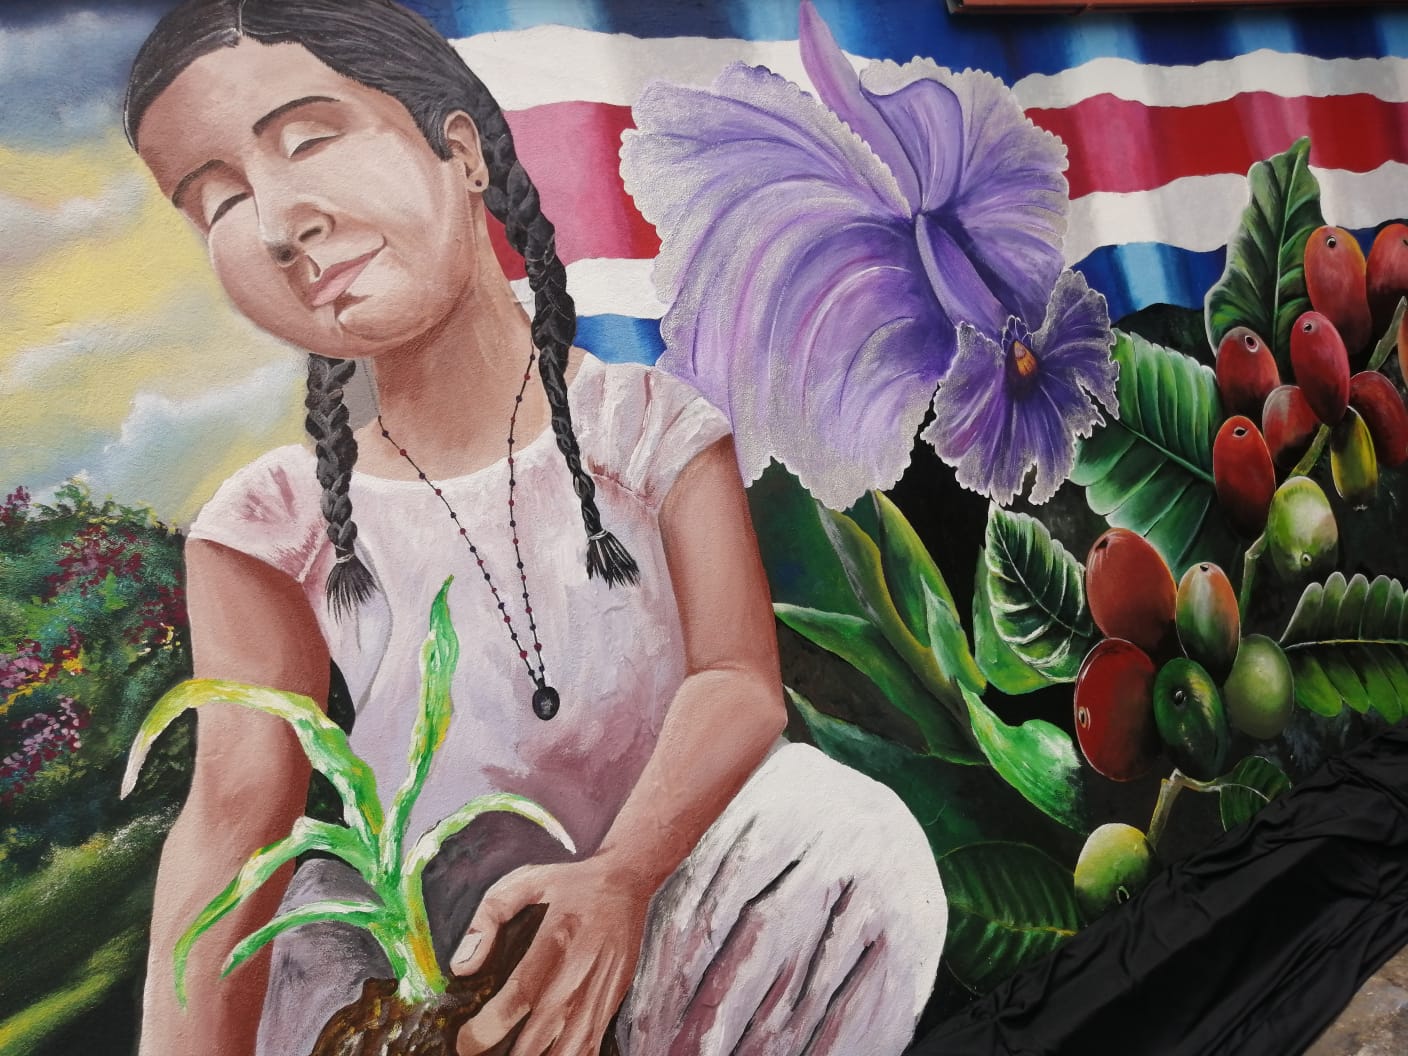 En el centro del mural se aprecia una niña que representa la actualidad y futuro de Belén. Foto: Alejandro Umaña Rojas.